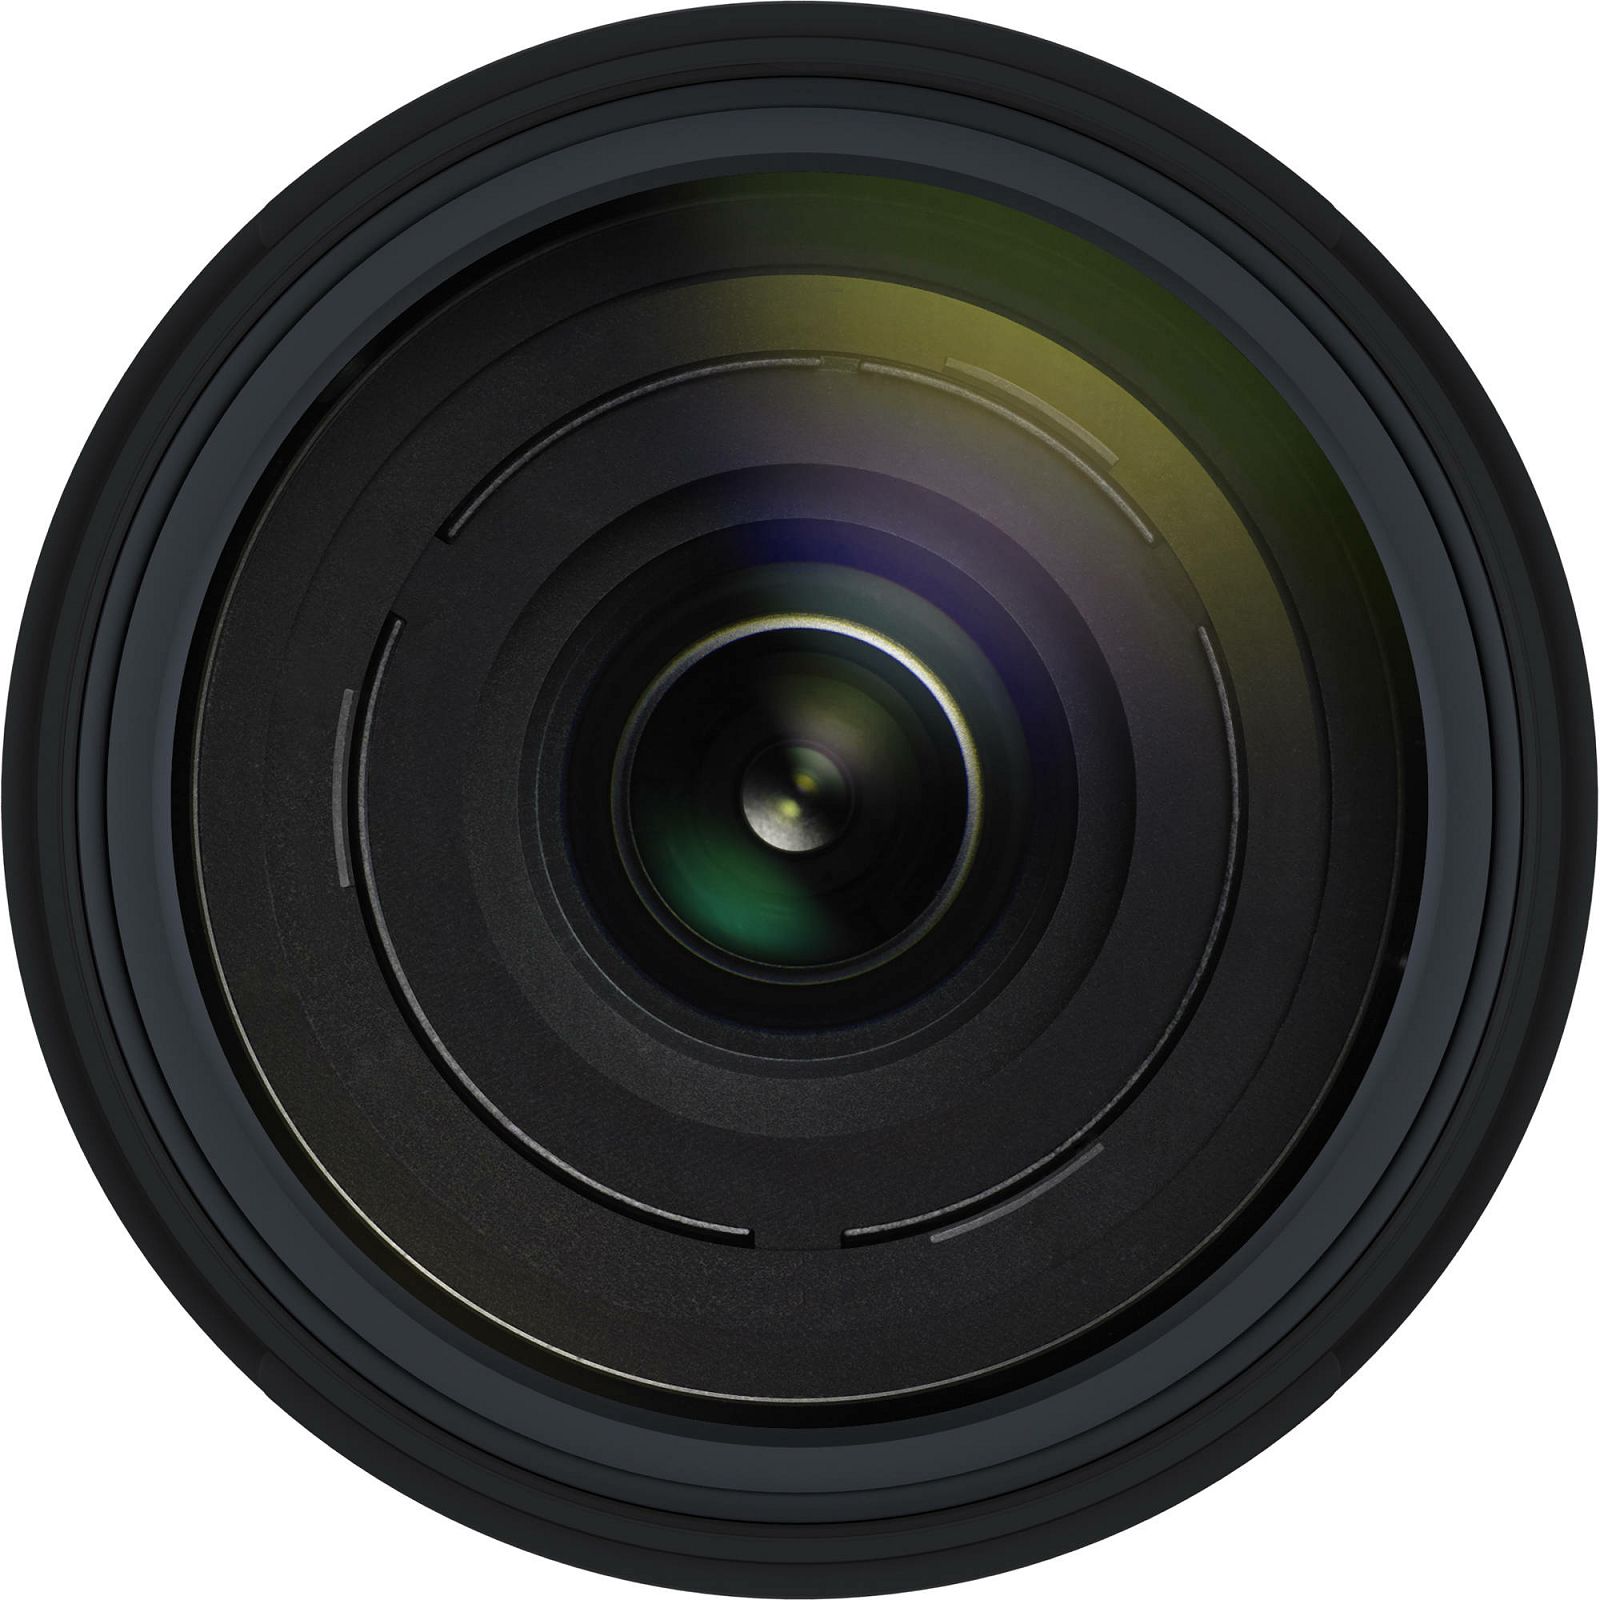 Tamron 18-400mm f/3.5-6.3 Di II VC HLD allround objektiv za Canon EF-S (B028E)